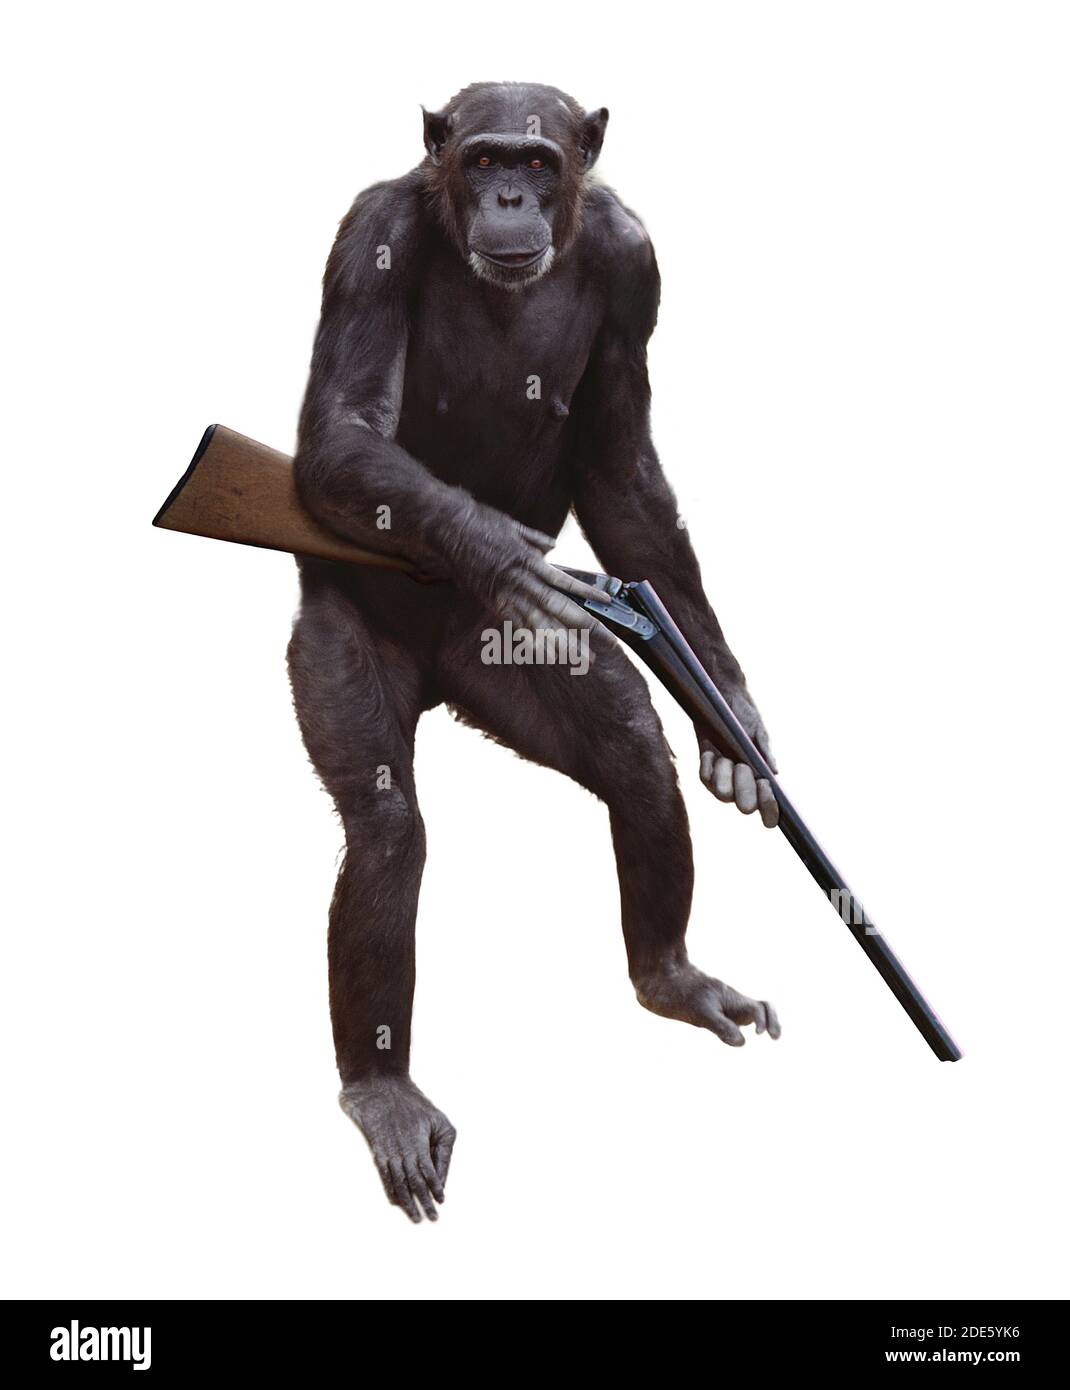 Chimpanzee, pan troglodytes, Monkey with Gun against White Background,  Digital composite Stock Photo - Alamy